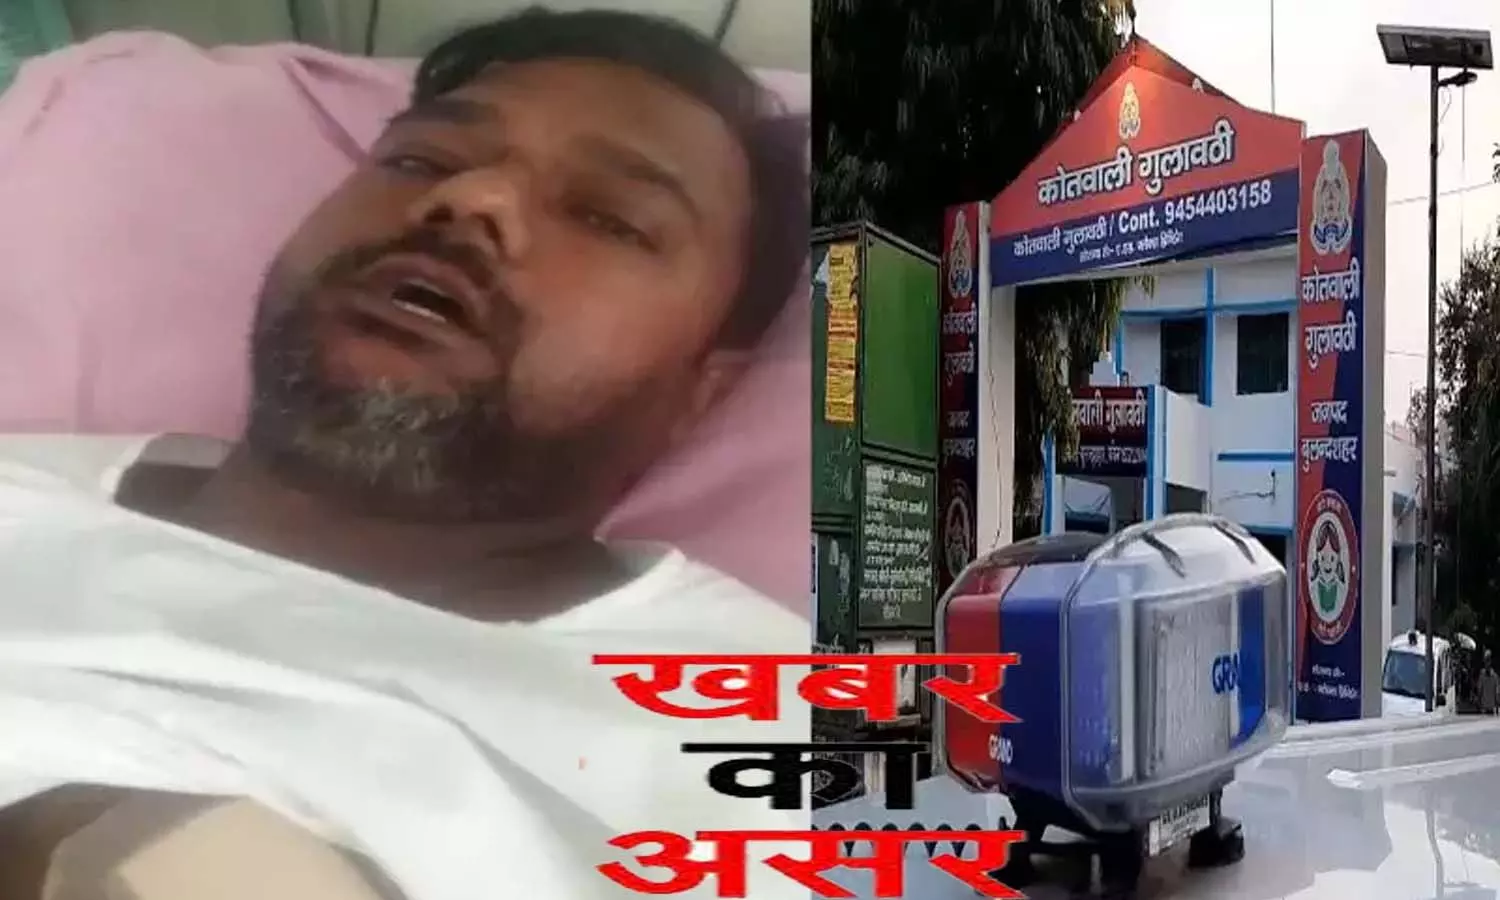 Bulandshahr News: न्यूज ट्रैक की खबर का असर, NH-234 पर युवक को चाकुओं से गोदने वाले 4 दबंगों पर हुई FIR